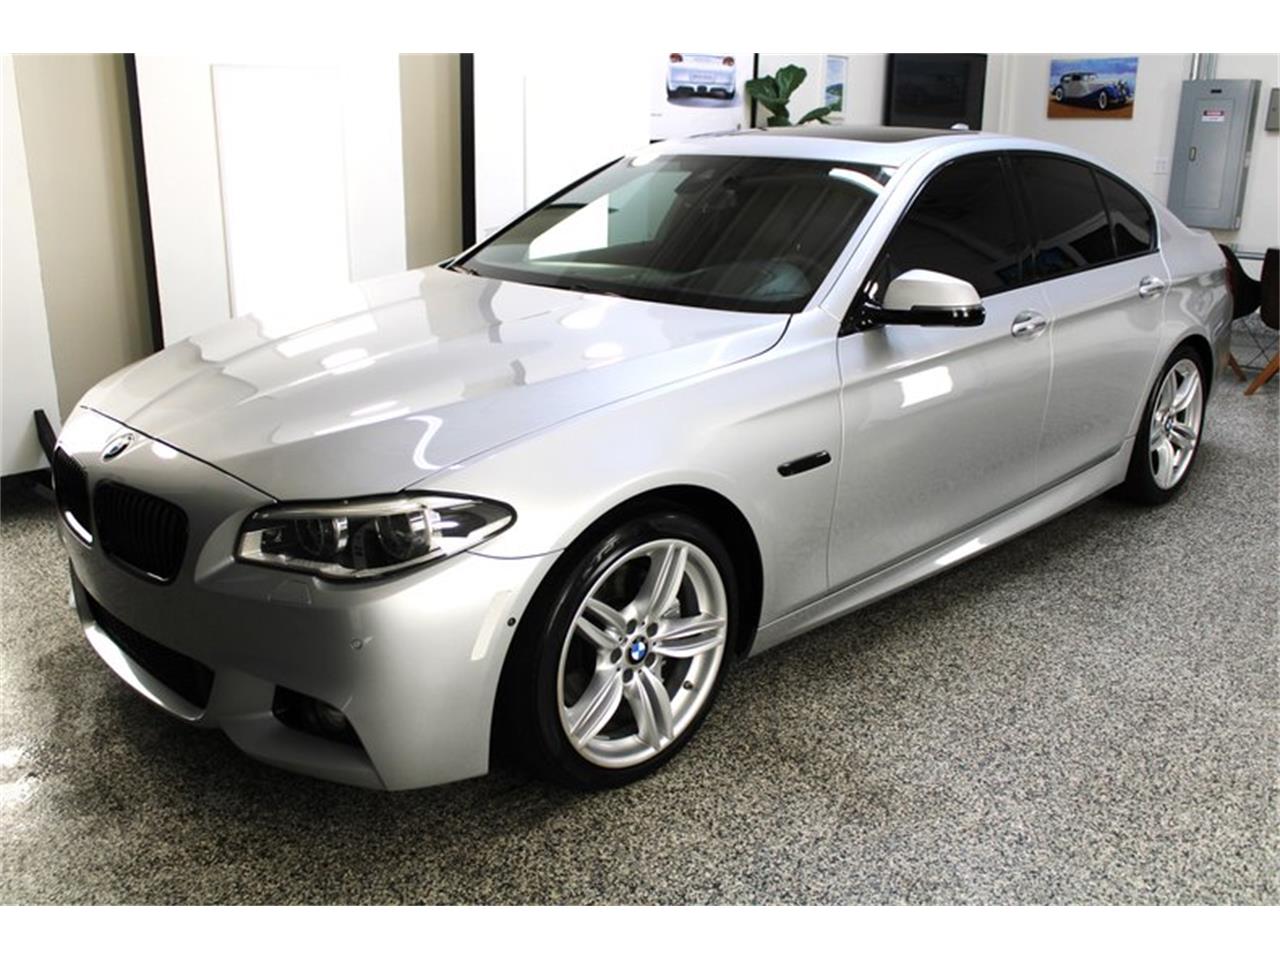 For Sale: 2016 BMW 5 Series in Laguna Beach, California for sale in Laguna Beach, CA